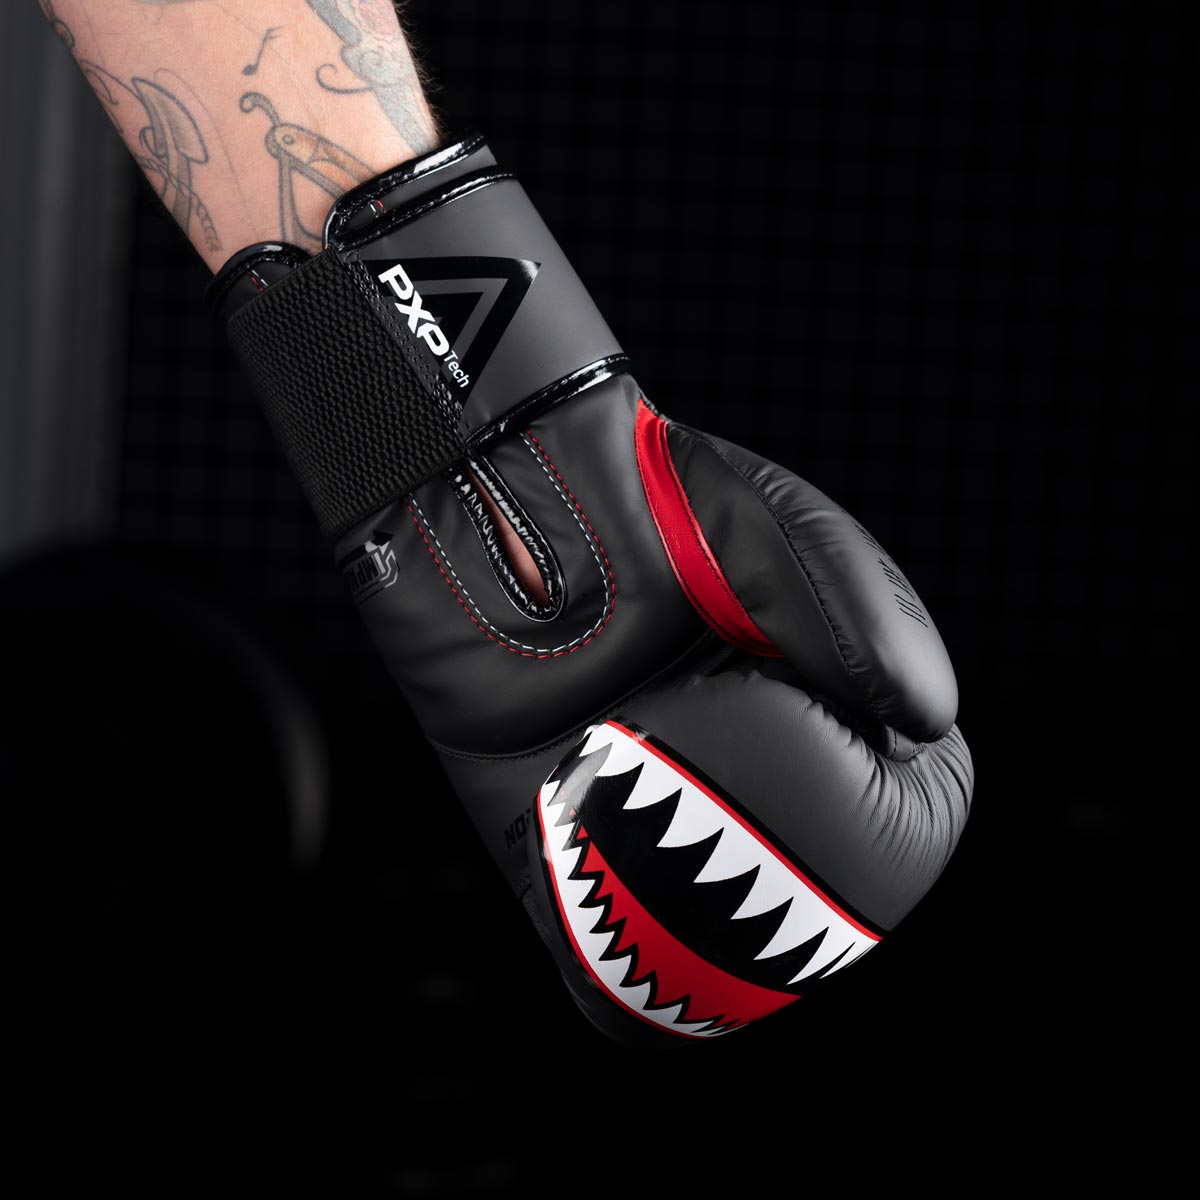 Die Phantom Fight Squad Boxhandschuhe für MMA verfügen über einen auffälligen Print im Haifisch Look.